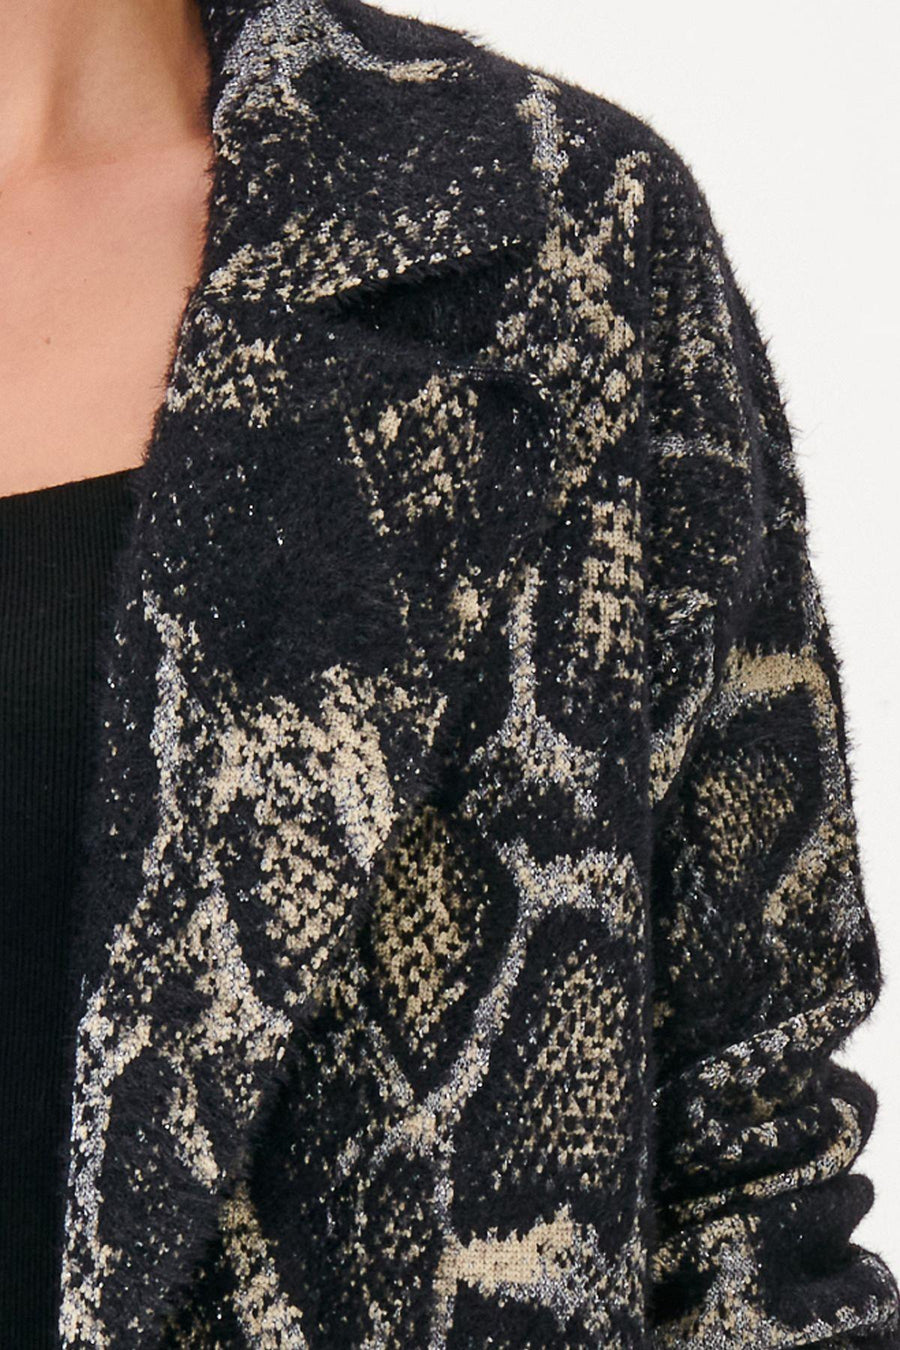 Snake Patterned Black Knit Coat With Pockets | Porterist